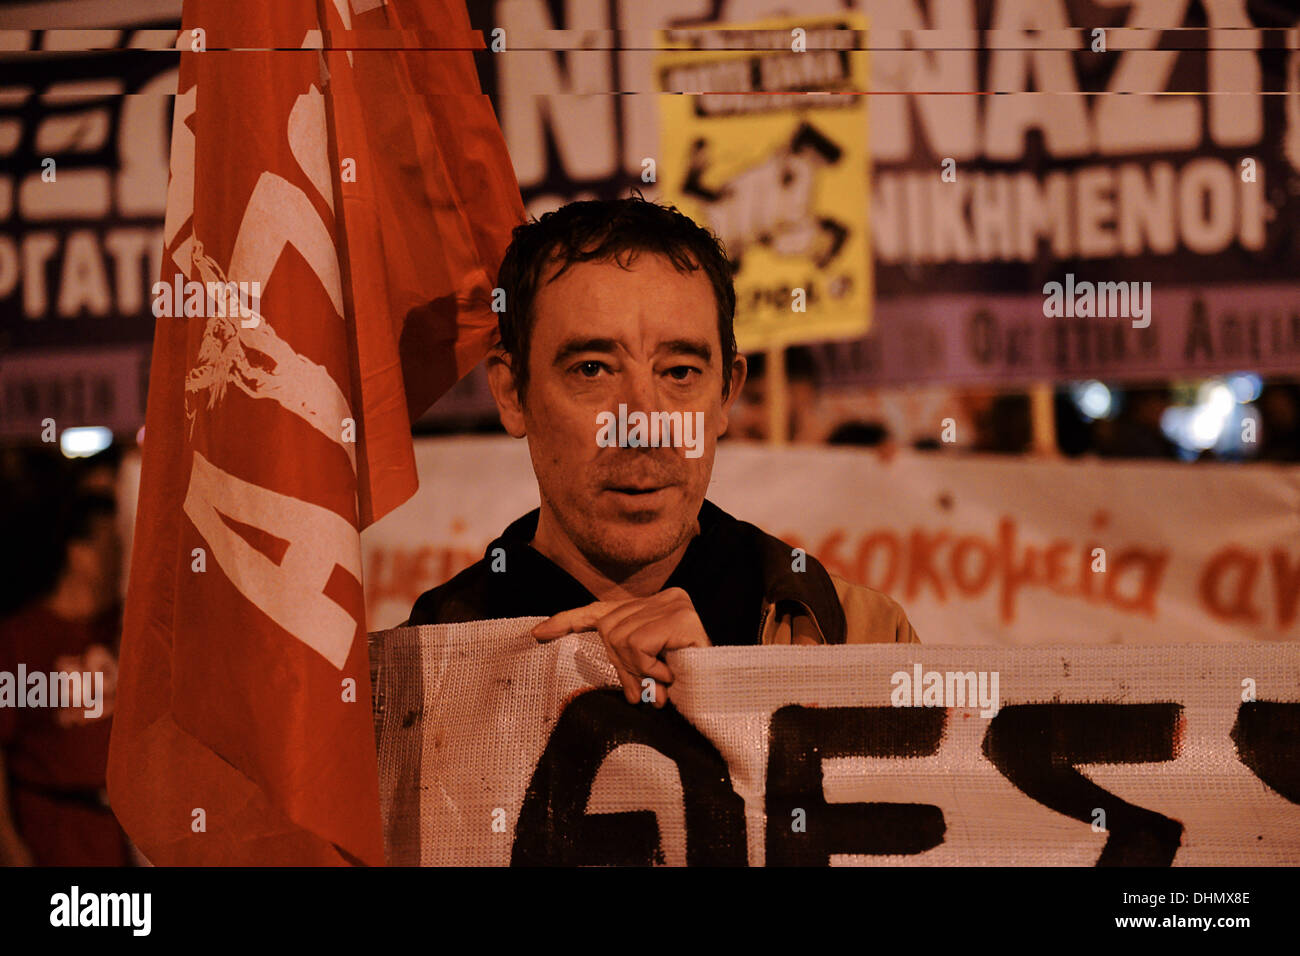 Thessalonique, Grèce. 12 nov., 2013. Un manifestant tient un drapeau d'une organisation antiraciste au cours de la marche. Les organisations racistes et les membres du syndicat ont démontré à Thessalonique, exigeant la fermeture de l'extrême-droite Aube dorée a des bureaux dans toutes les villes de Grèce. Les manifestants ont défilé et ont essayé d'atteindre la Golden Dawn bureaux © Giannis Papanikos/NurPhoto ZUMAPRESS.com/Alamy/Live News Banque D'Images